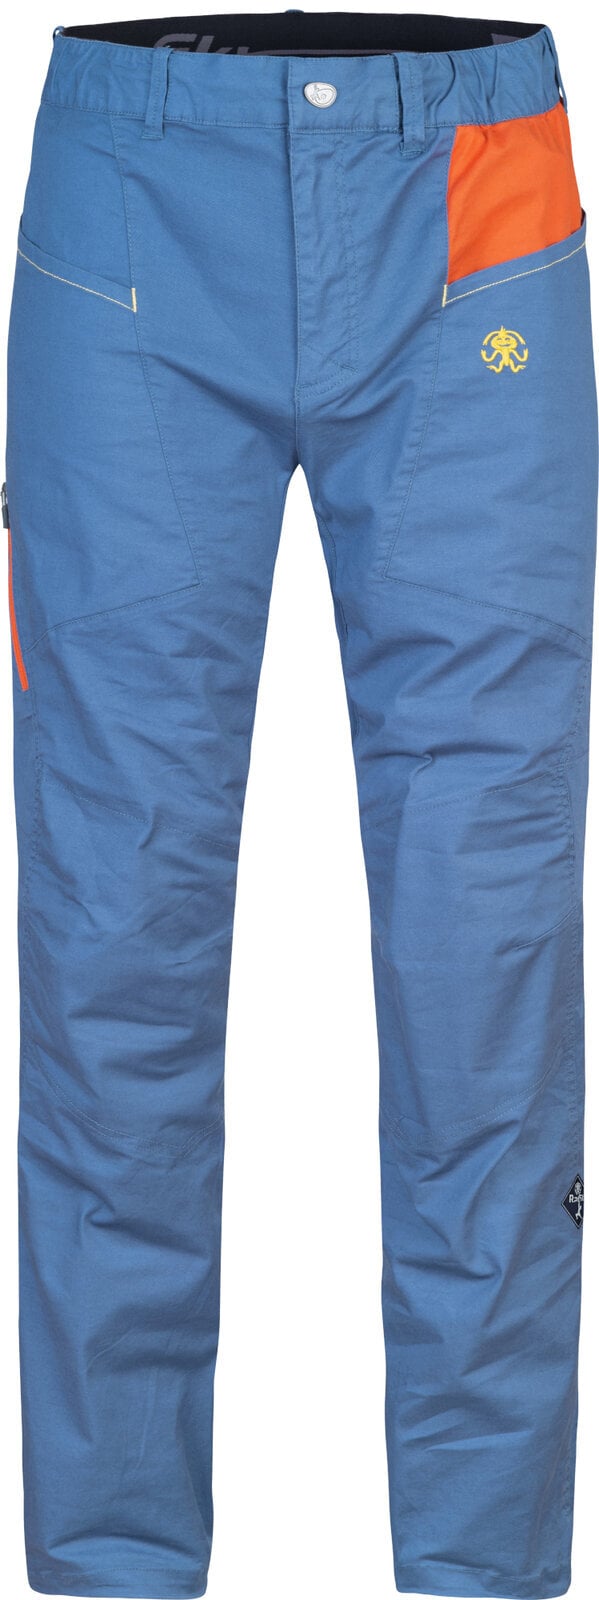 Pantalons outdoor Rafiki Crag Man Pants Ensign Blue/Clay L Pantalons outdoor